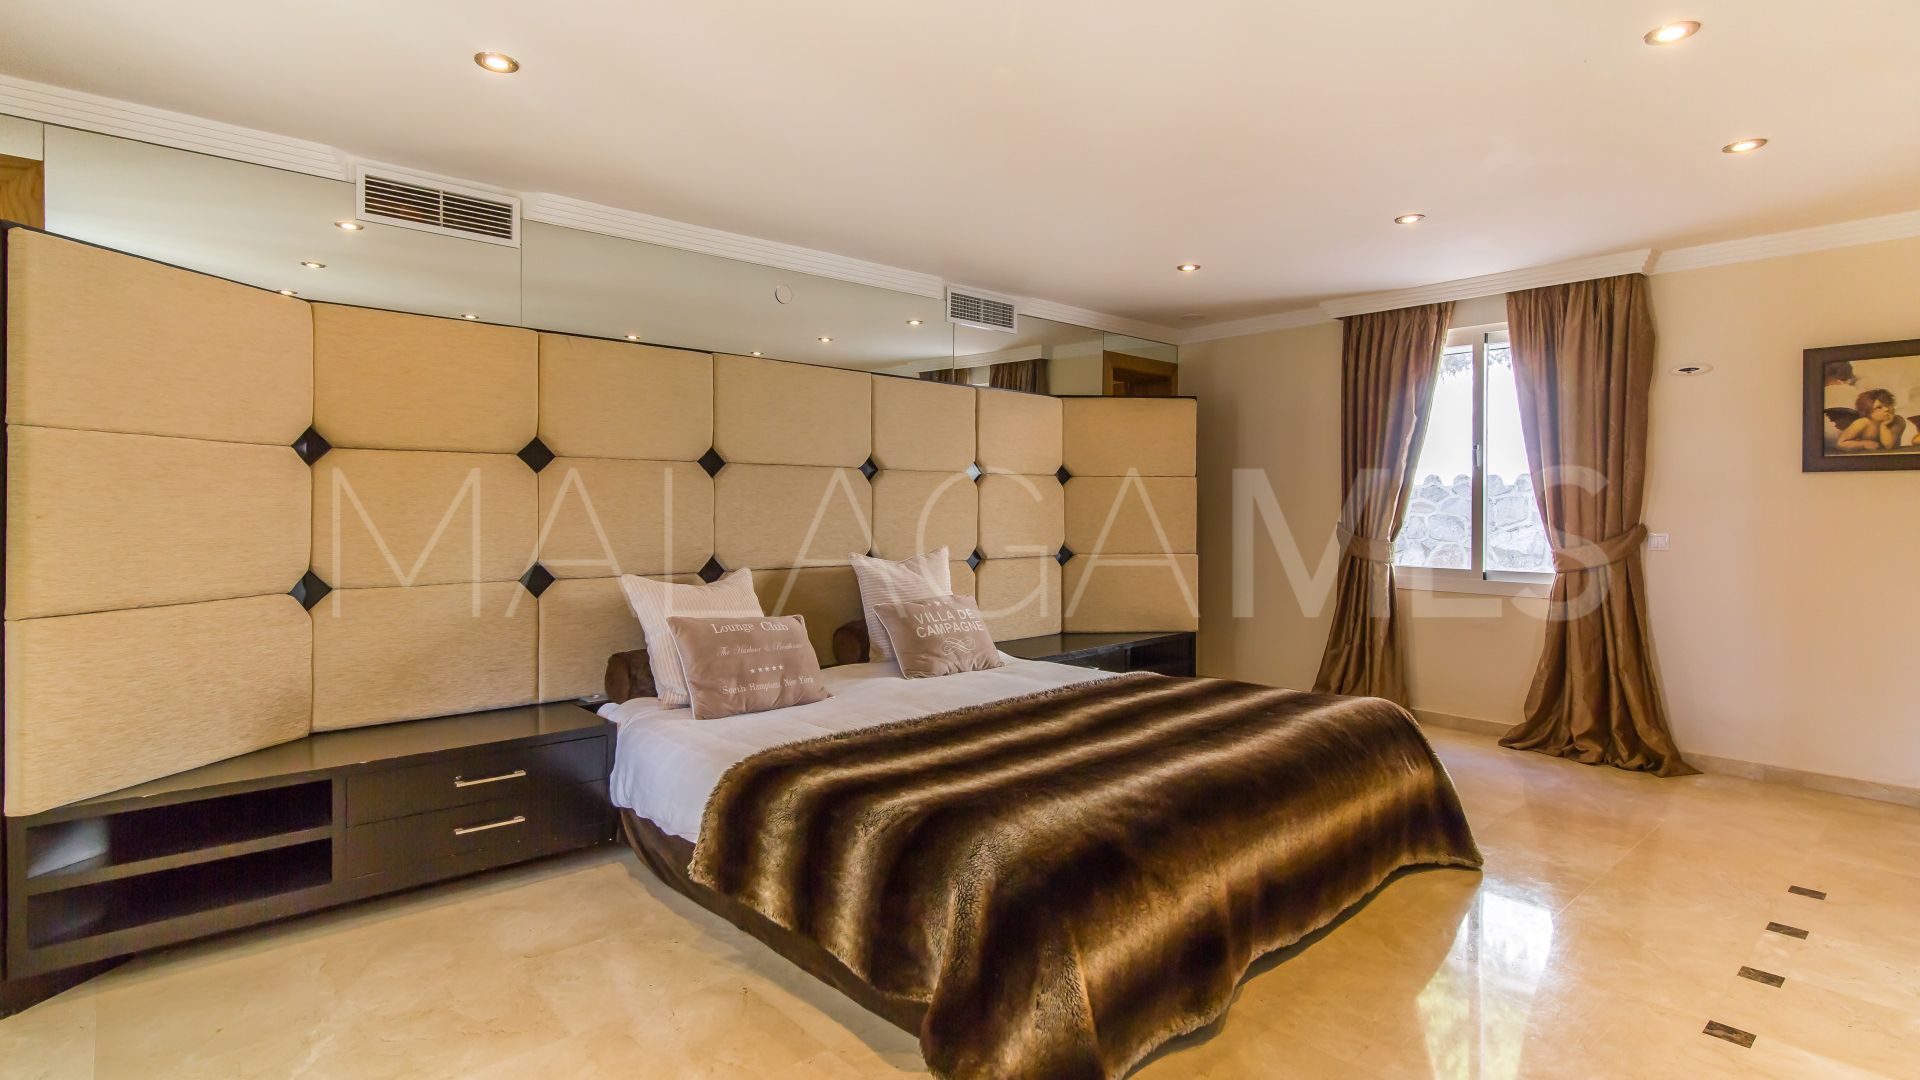 8 bedrooms villa in Elviria for sale